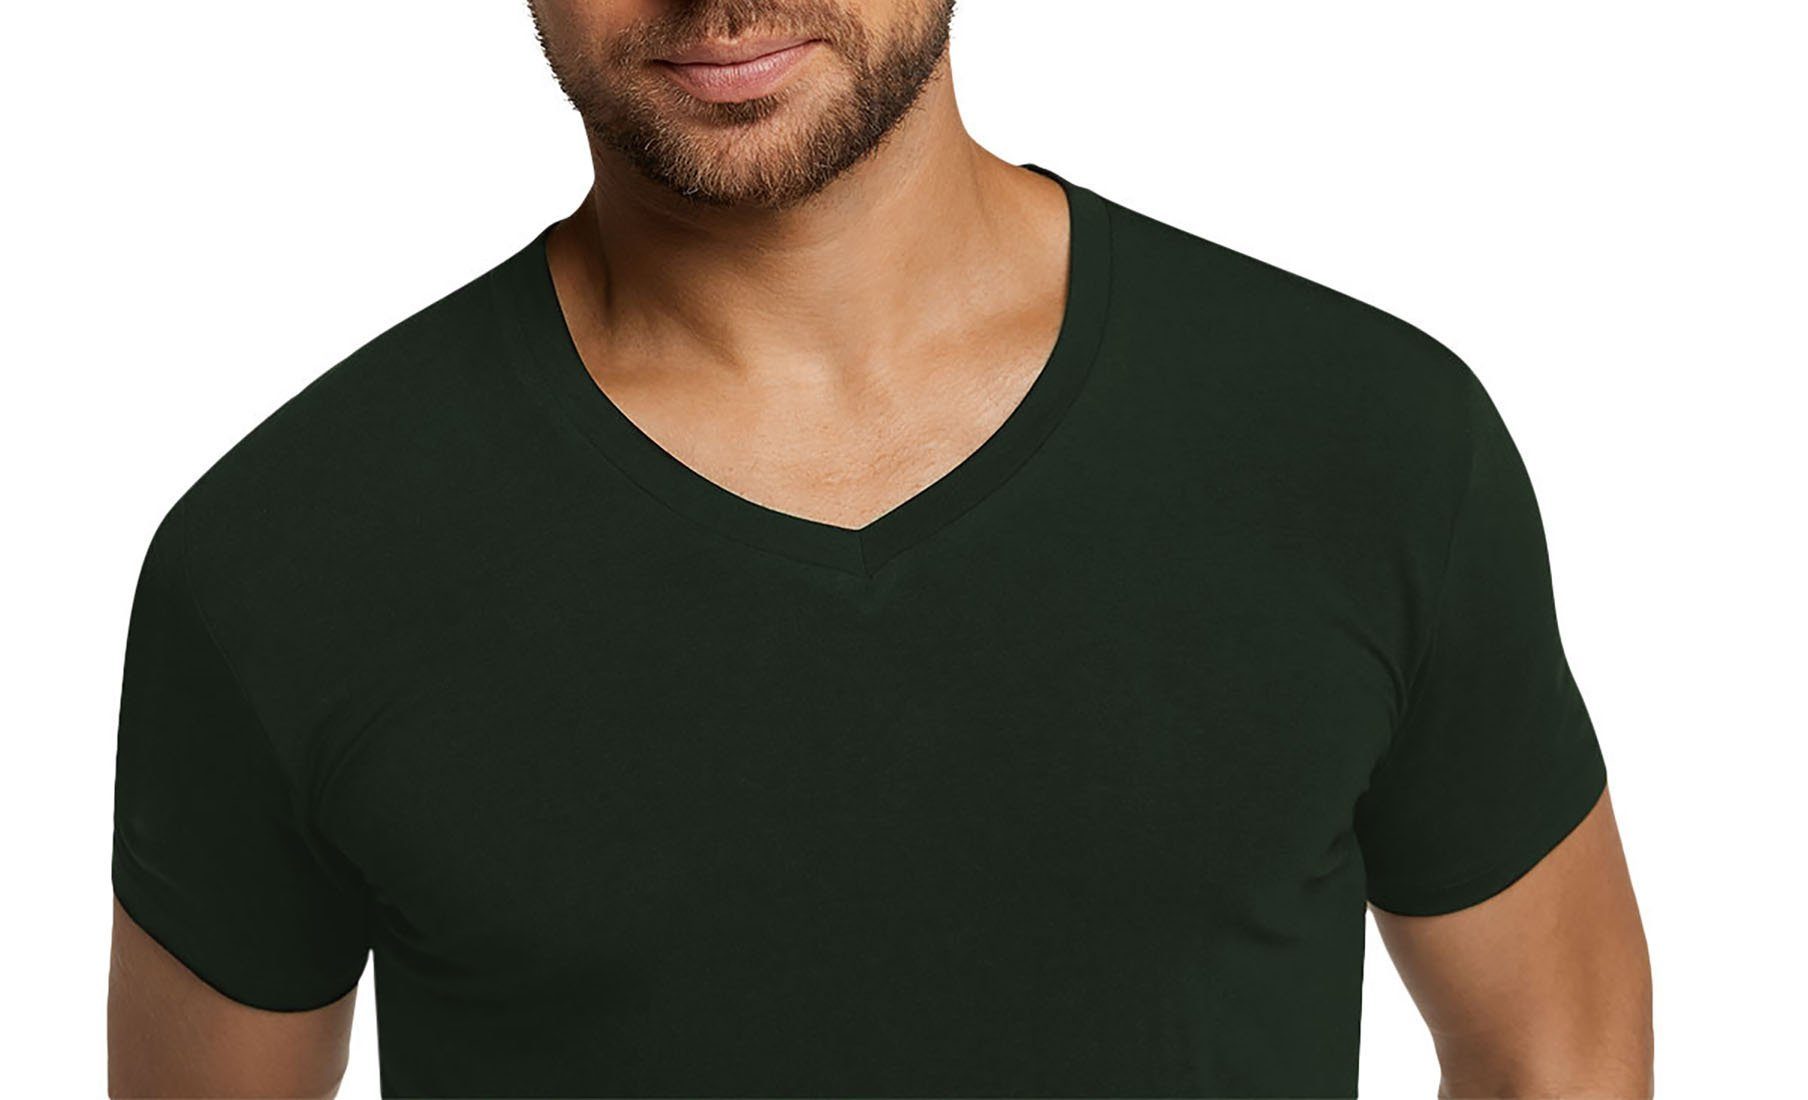 Bamboo basics T-Shirt Herren 2er VELO, Unterhemd Pack Grün T-Shirt 